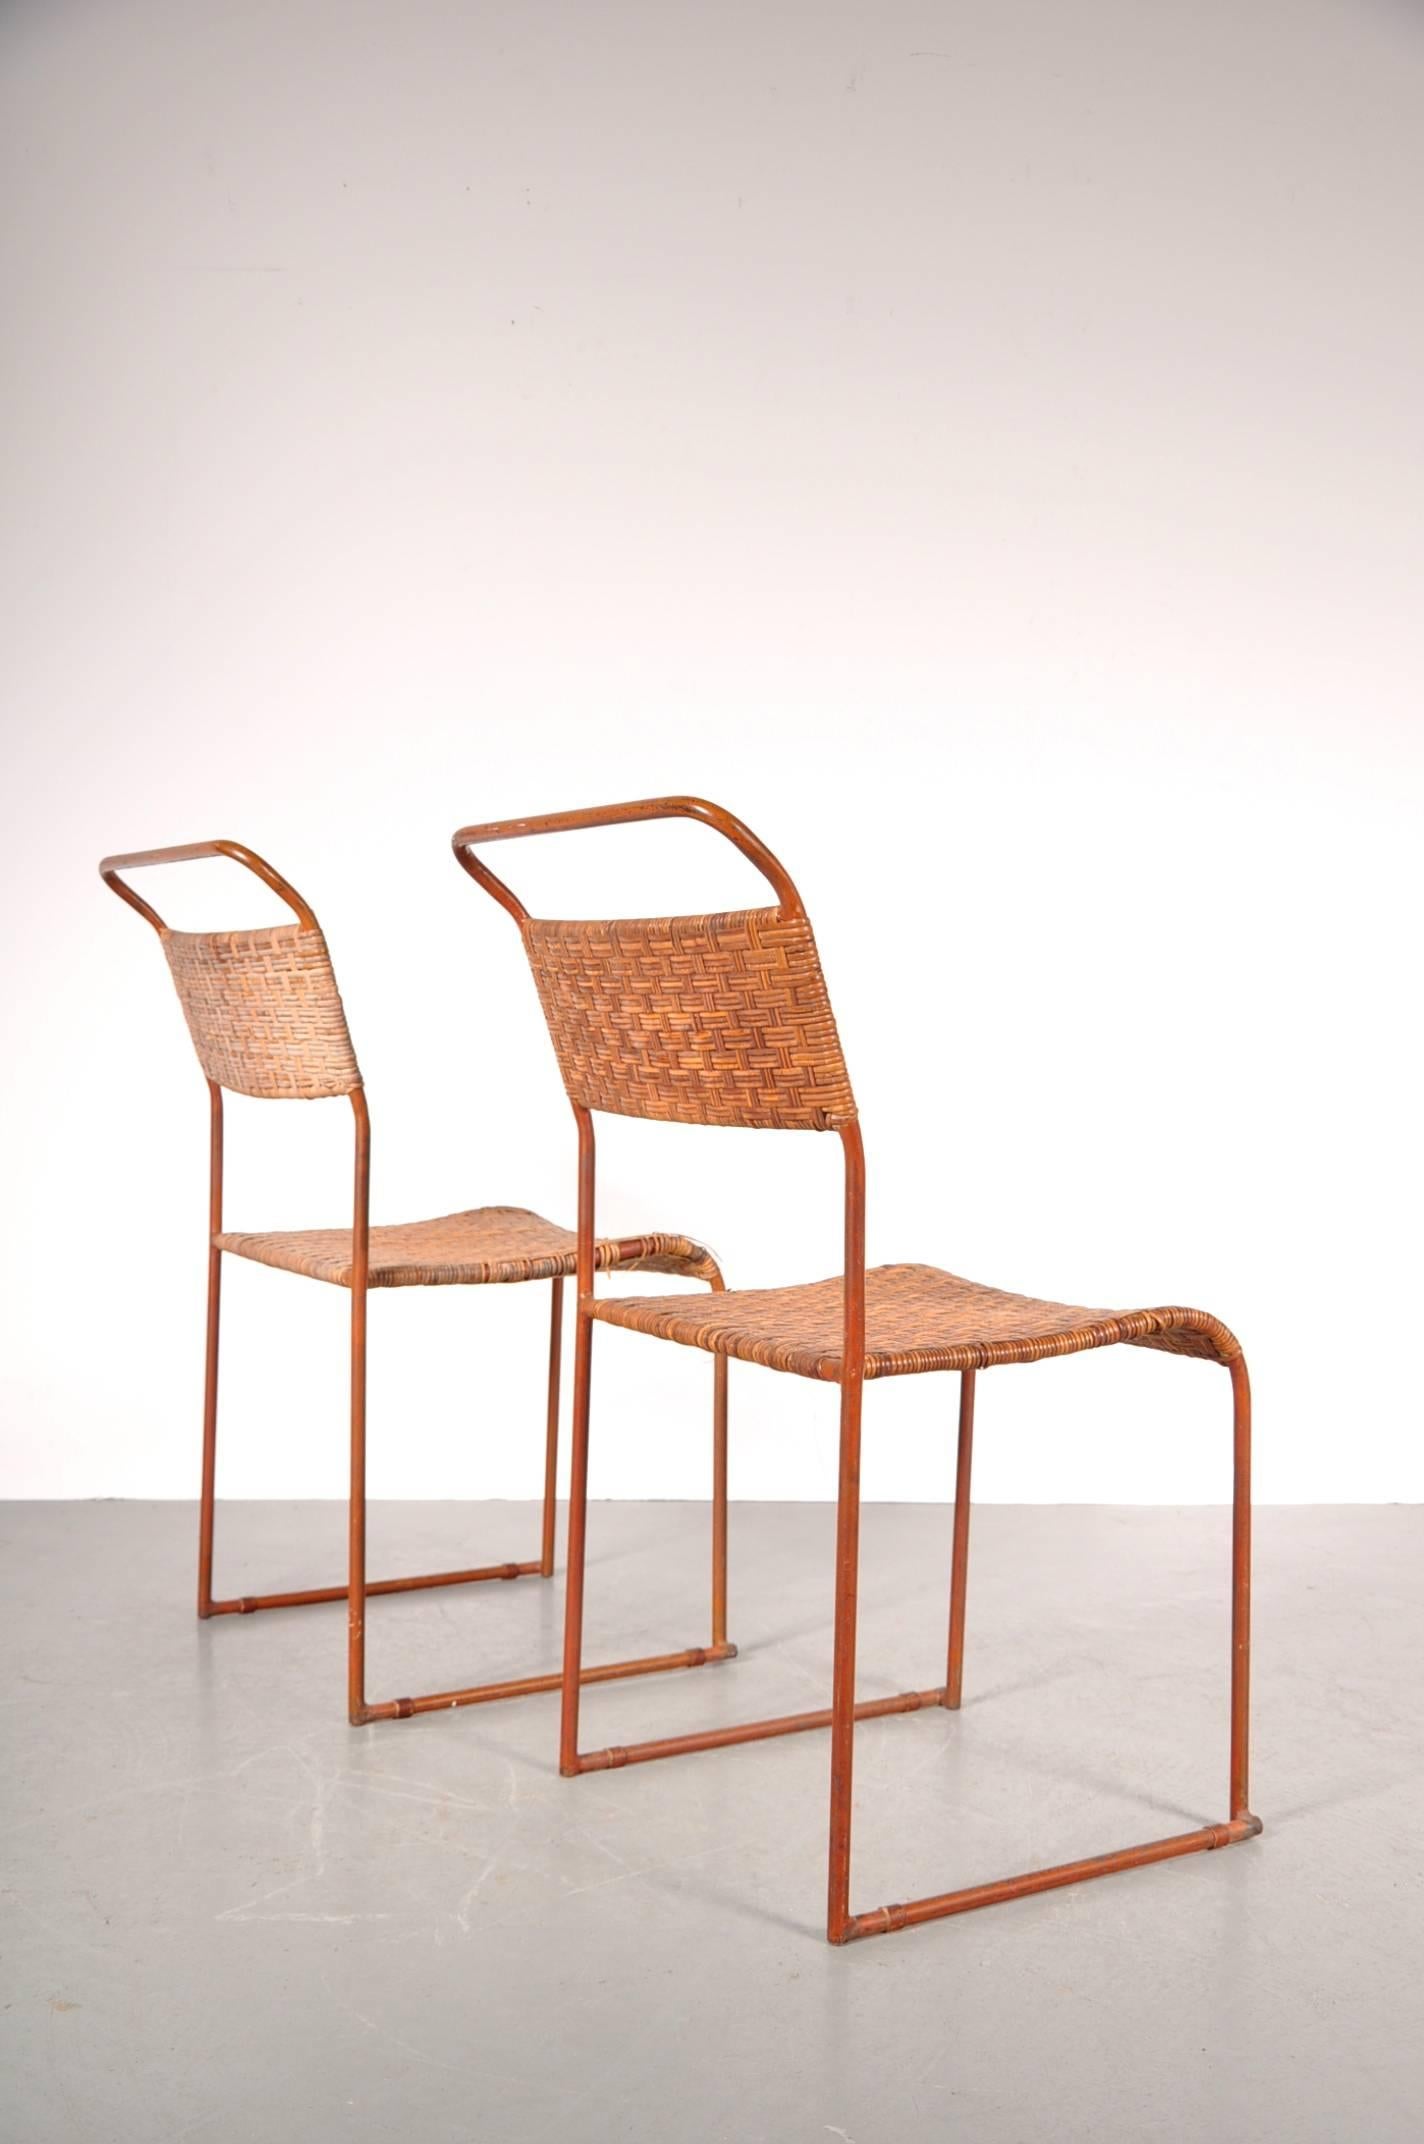 Ensemble étonnant de deux rares chaises à manger prototype Bauhaus, fabriquées vers 1930.

Ces chaises magnifiquement conçues ont une base en métal avec des sièges et des dossiers en rotin tressé. Une des chaises est encore en bon état, l'autre a